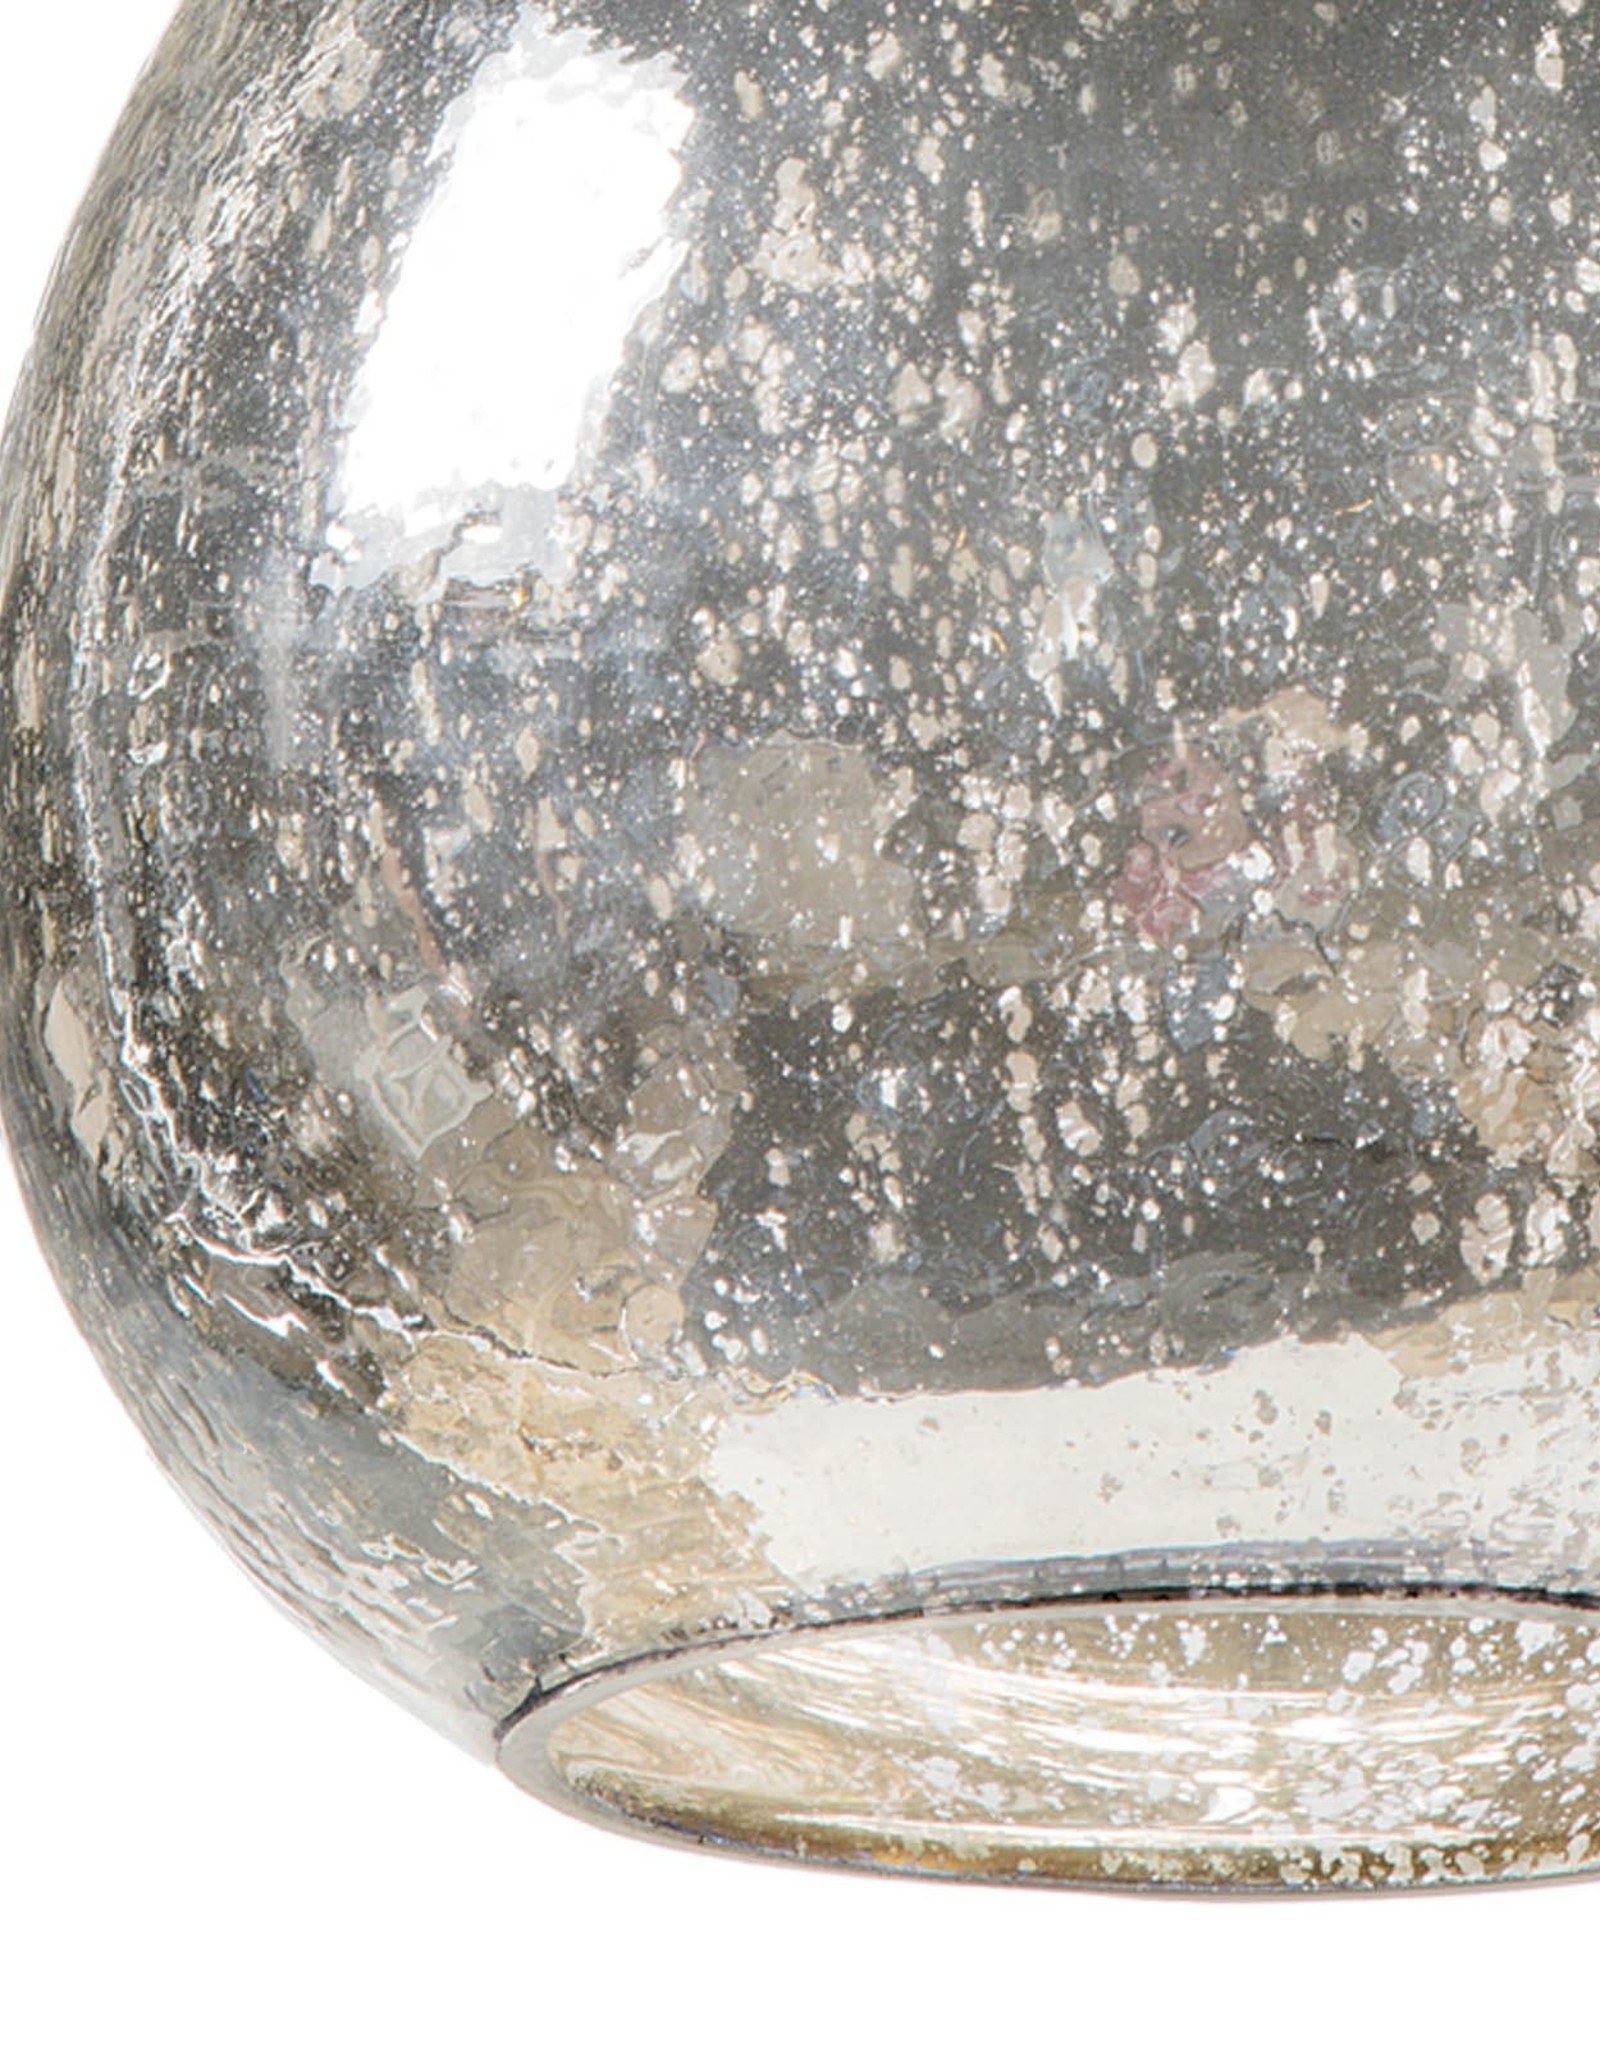 Regina Andrew Design Glass Float Pendant (Antique Mercury)